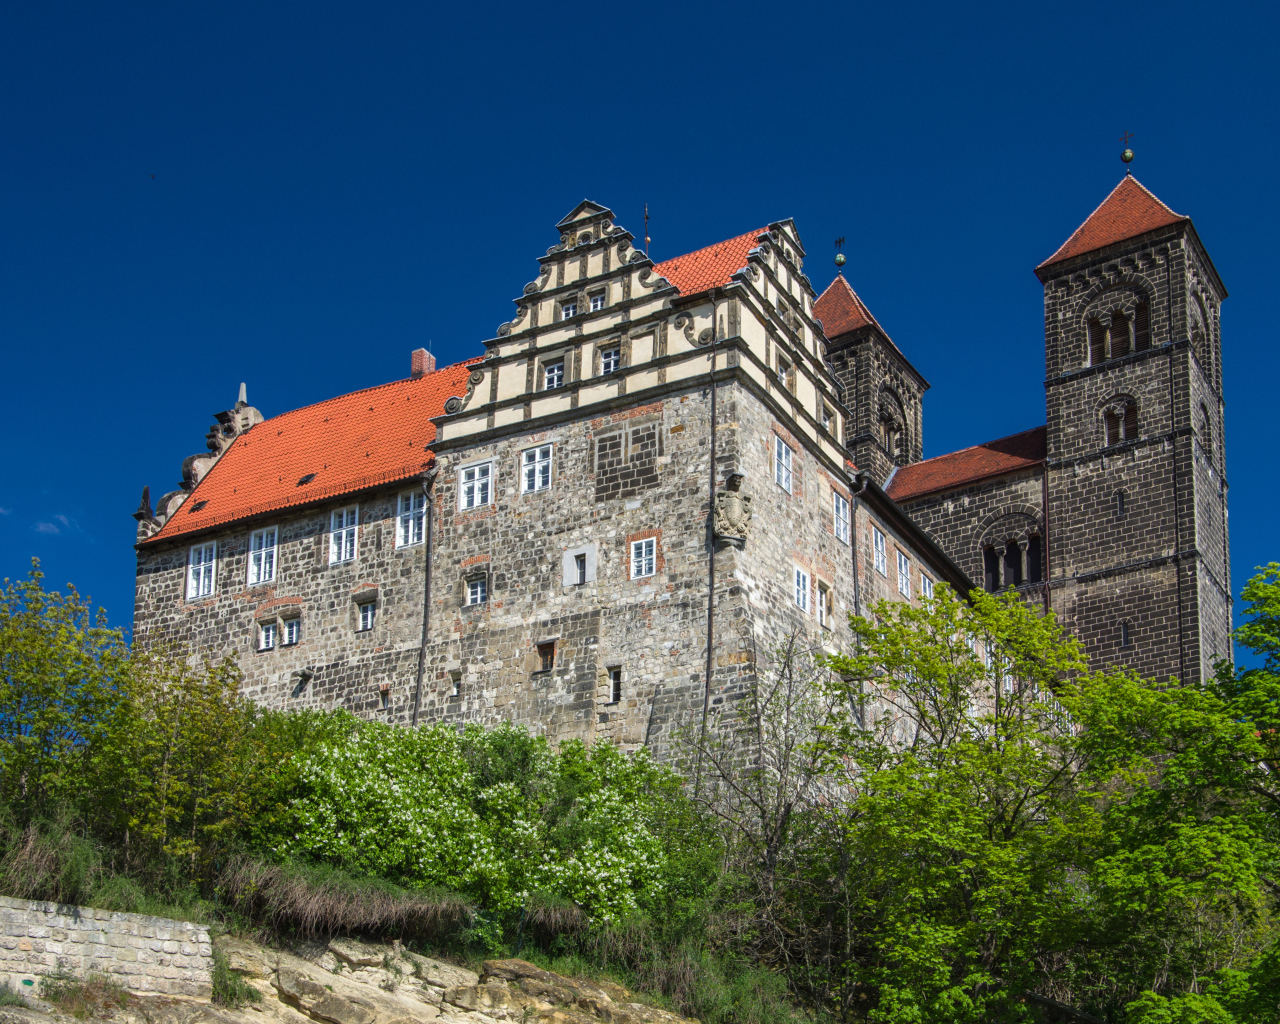 Вид на монастырь в городе Кведлинбург, Германия